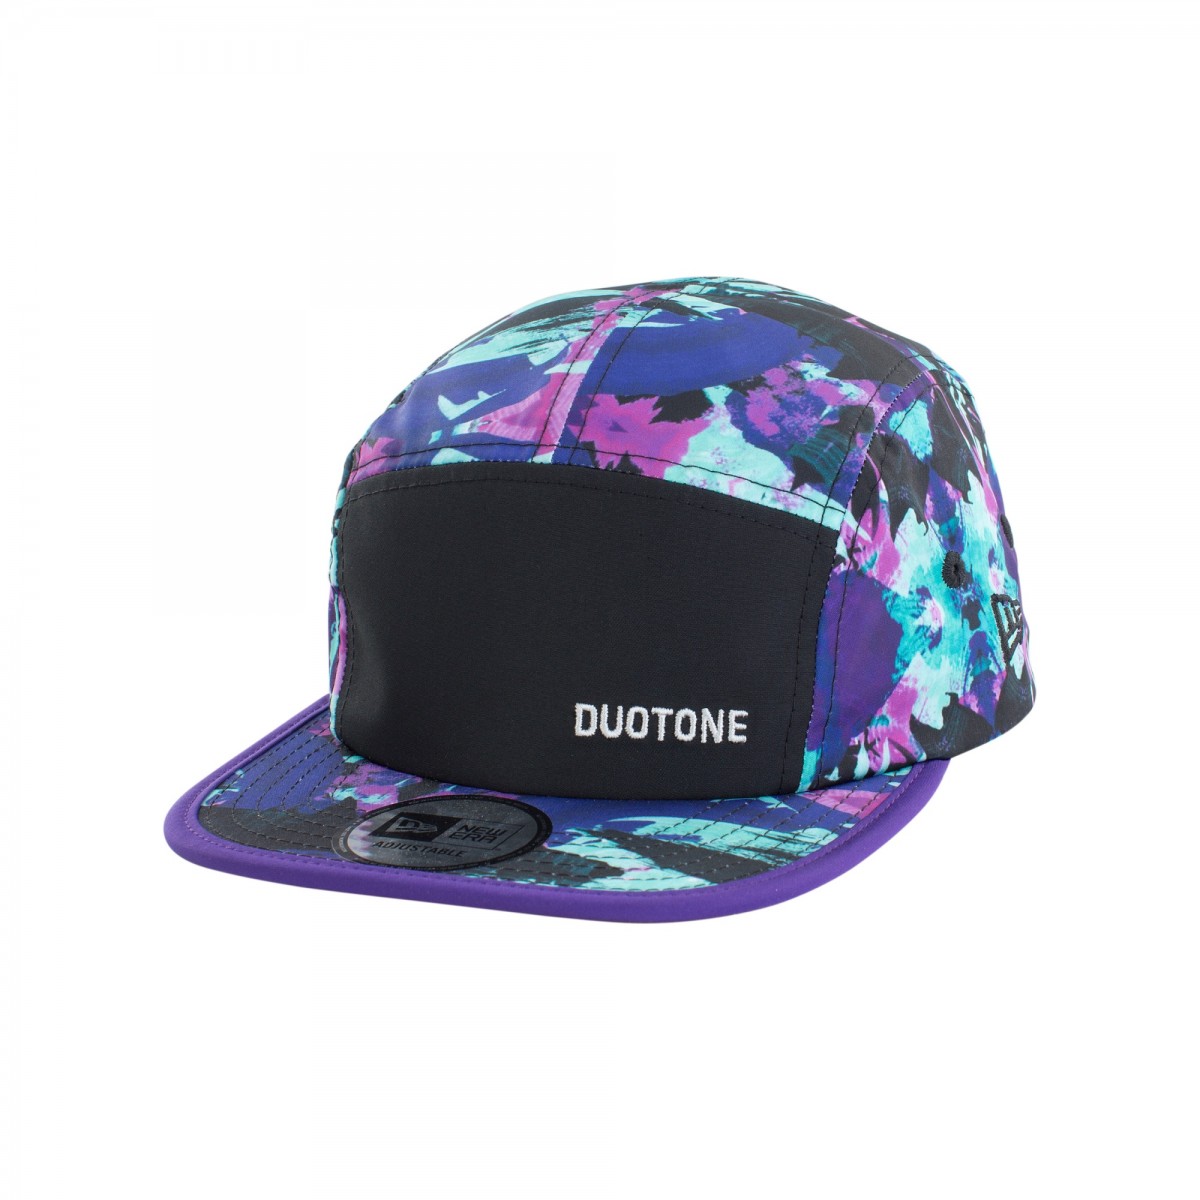 Duotone New era Jungle cap